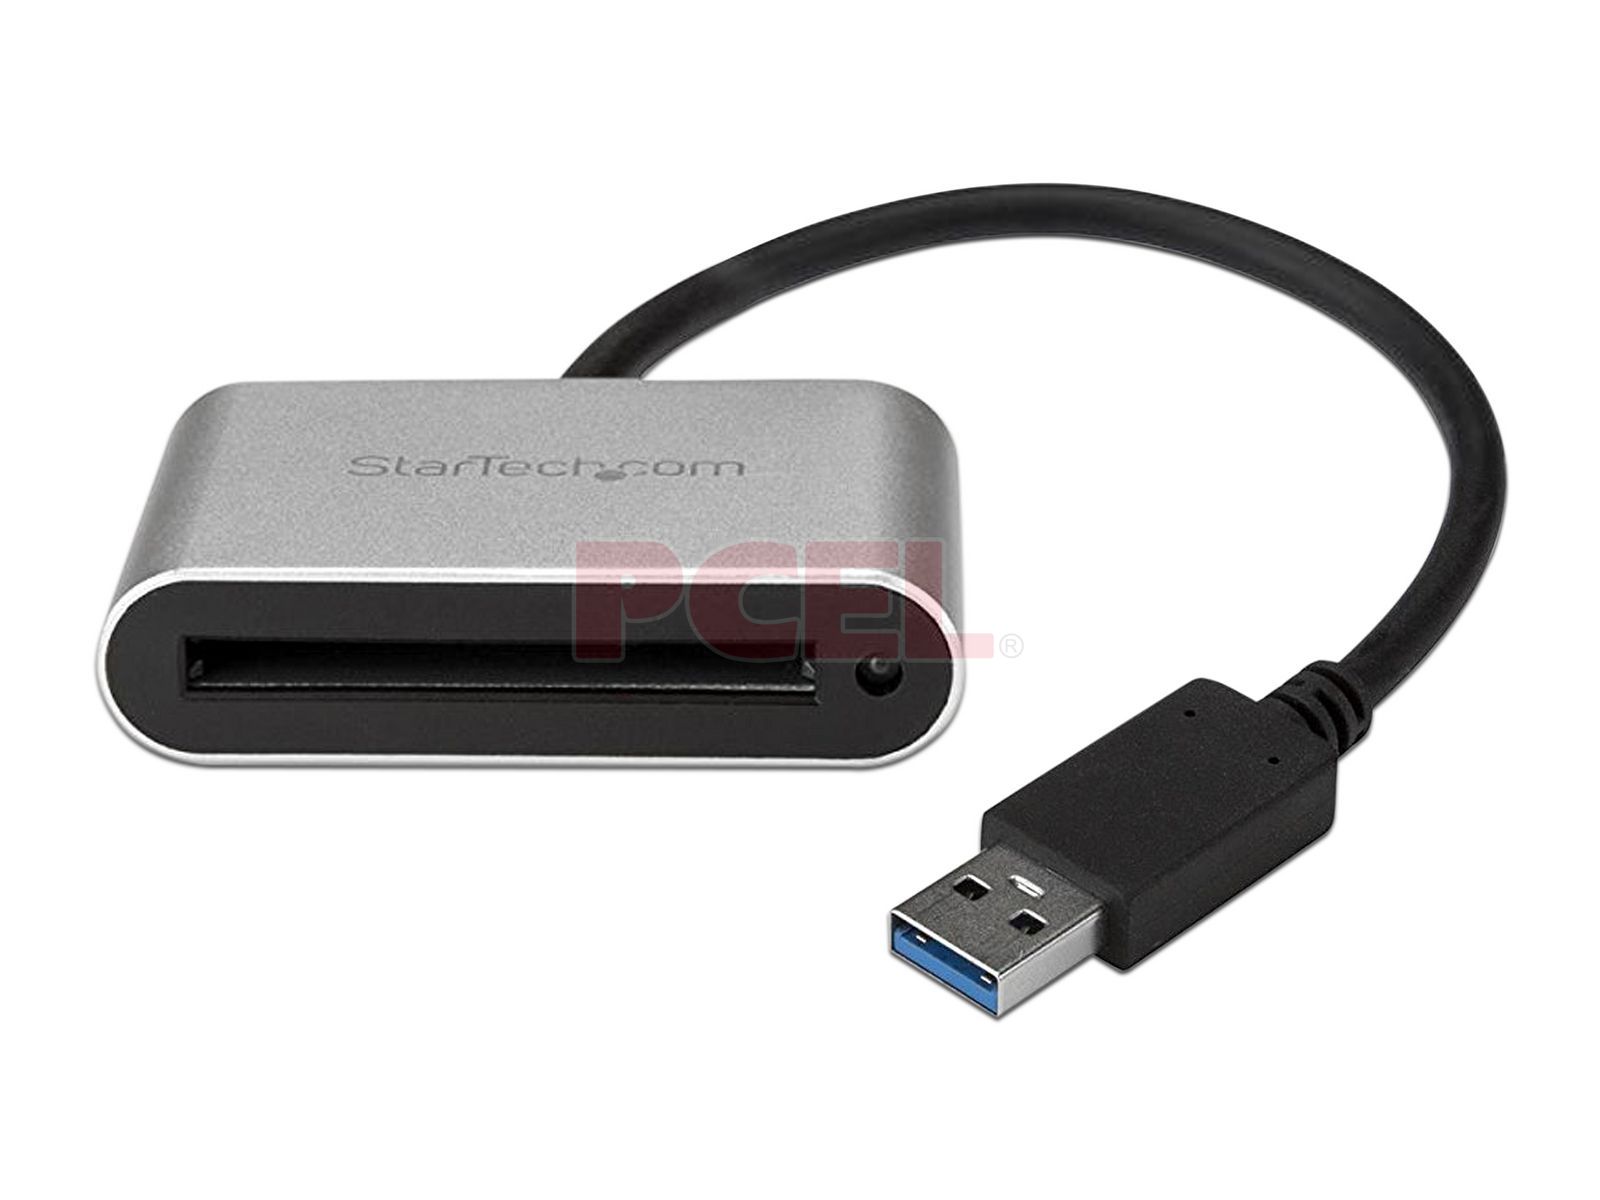 BYEASY CFast 2.0 Lector a través de USB 3.0 o puerto USB C Snoy Card More Atomos lector de tarjetas CFast Lector de tarjetas de memoria portátil profesional con puerto Thunderbolt 3 para Sandisk 